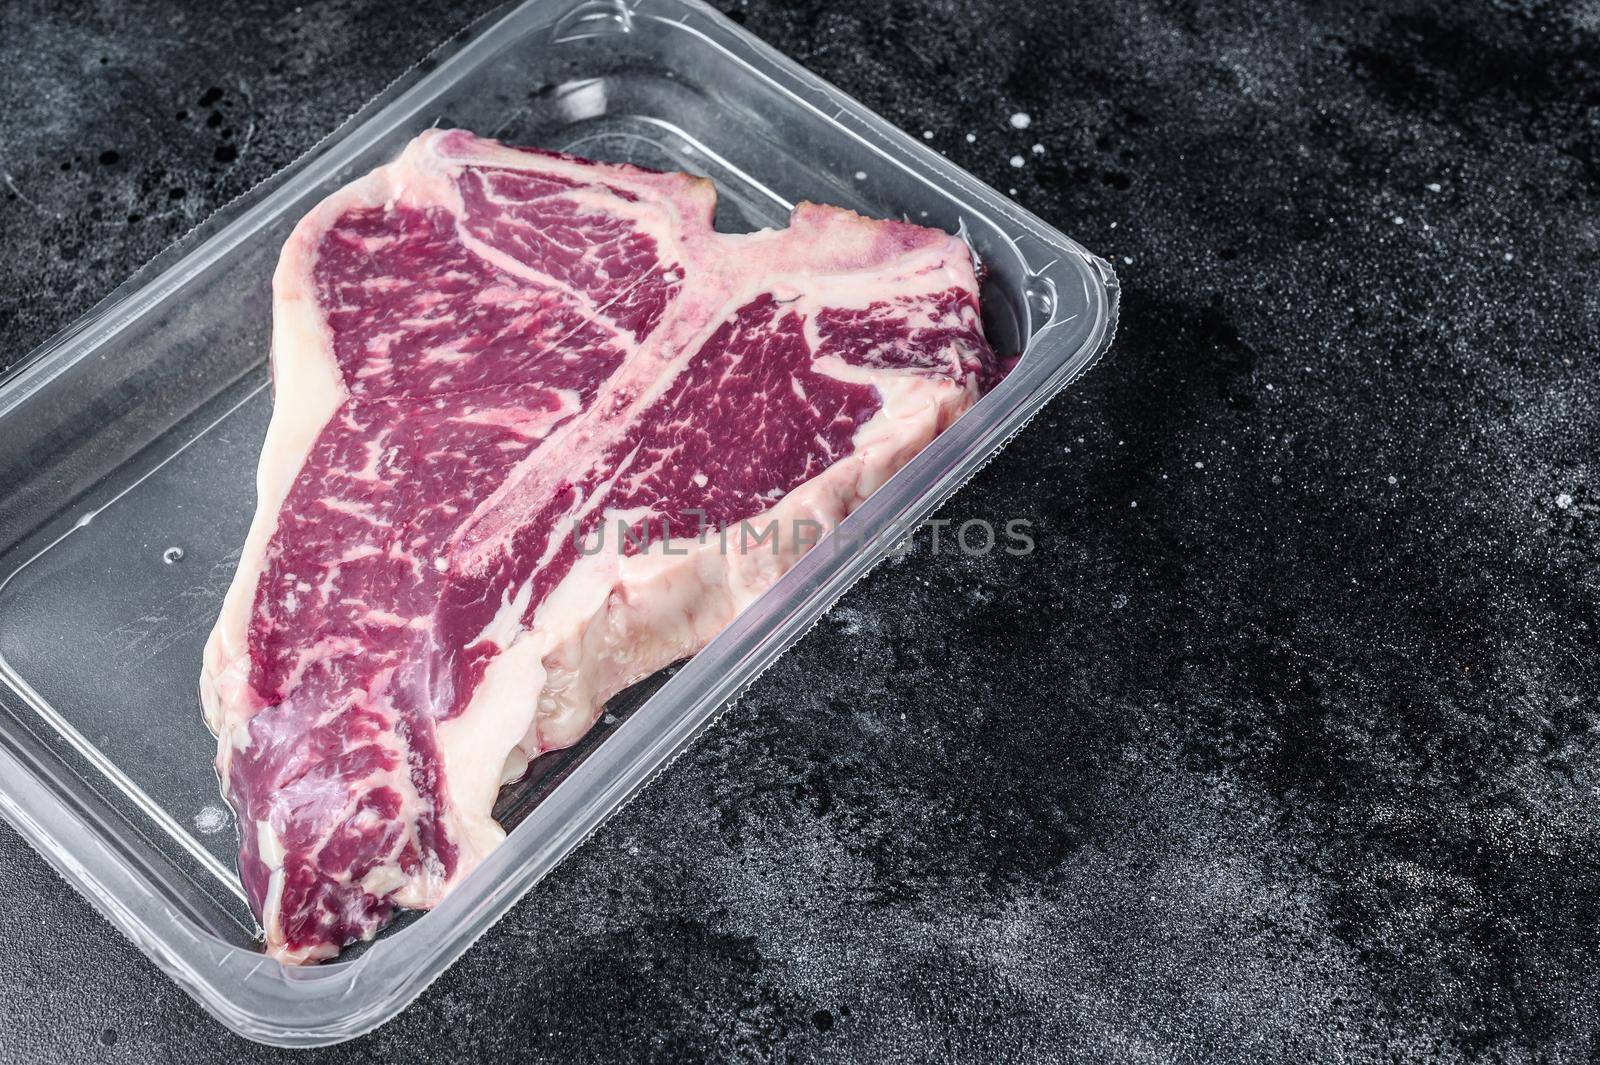 T-bon raw beef steak in vacuum packaging. Black background. Top view. Copy space.